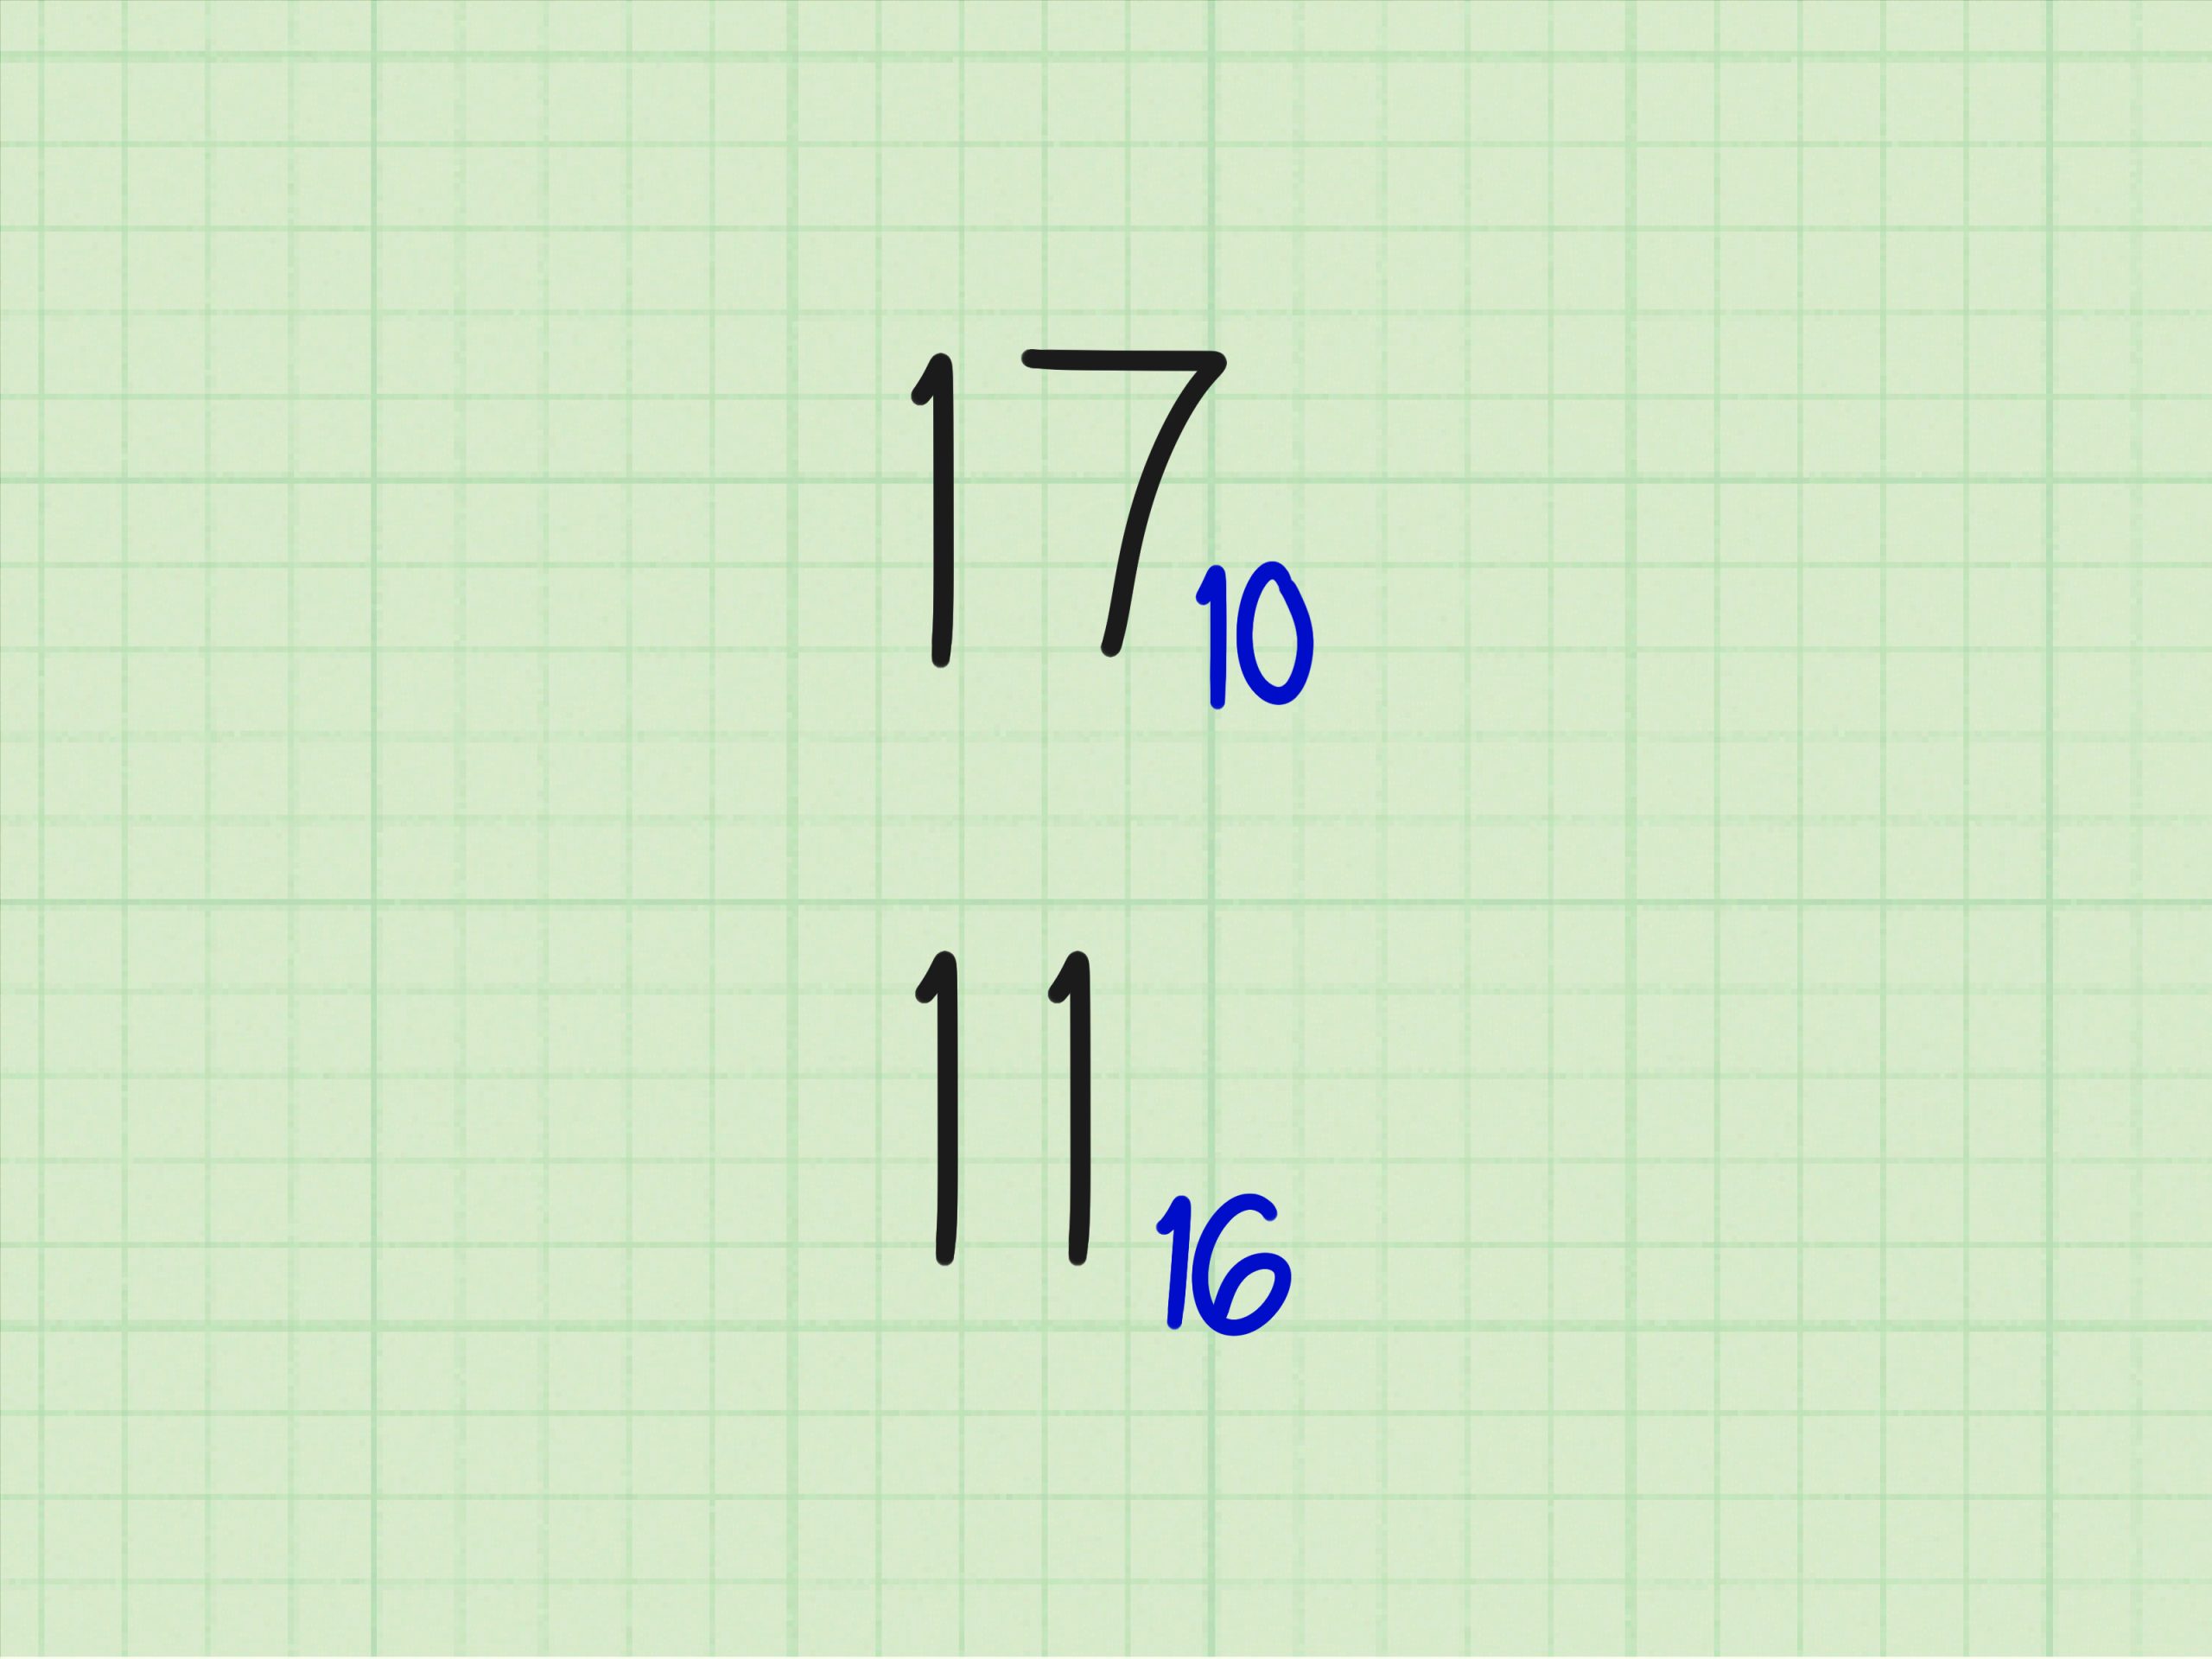 صورة يمكن من خلال جدول الترميز آسكي إيجاد المكافئ الستة عشري للأعداد العشرية.